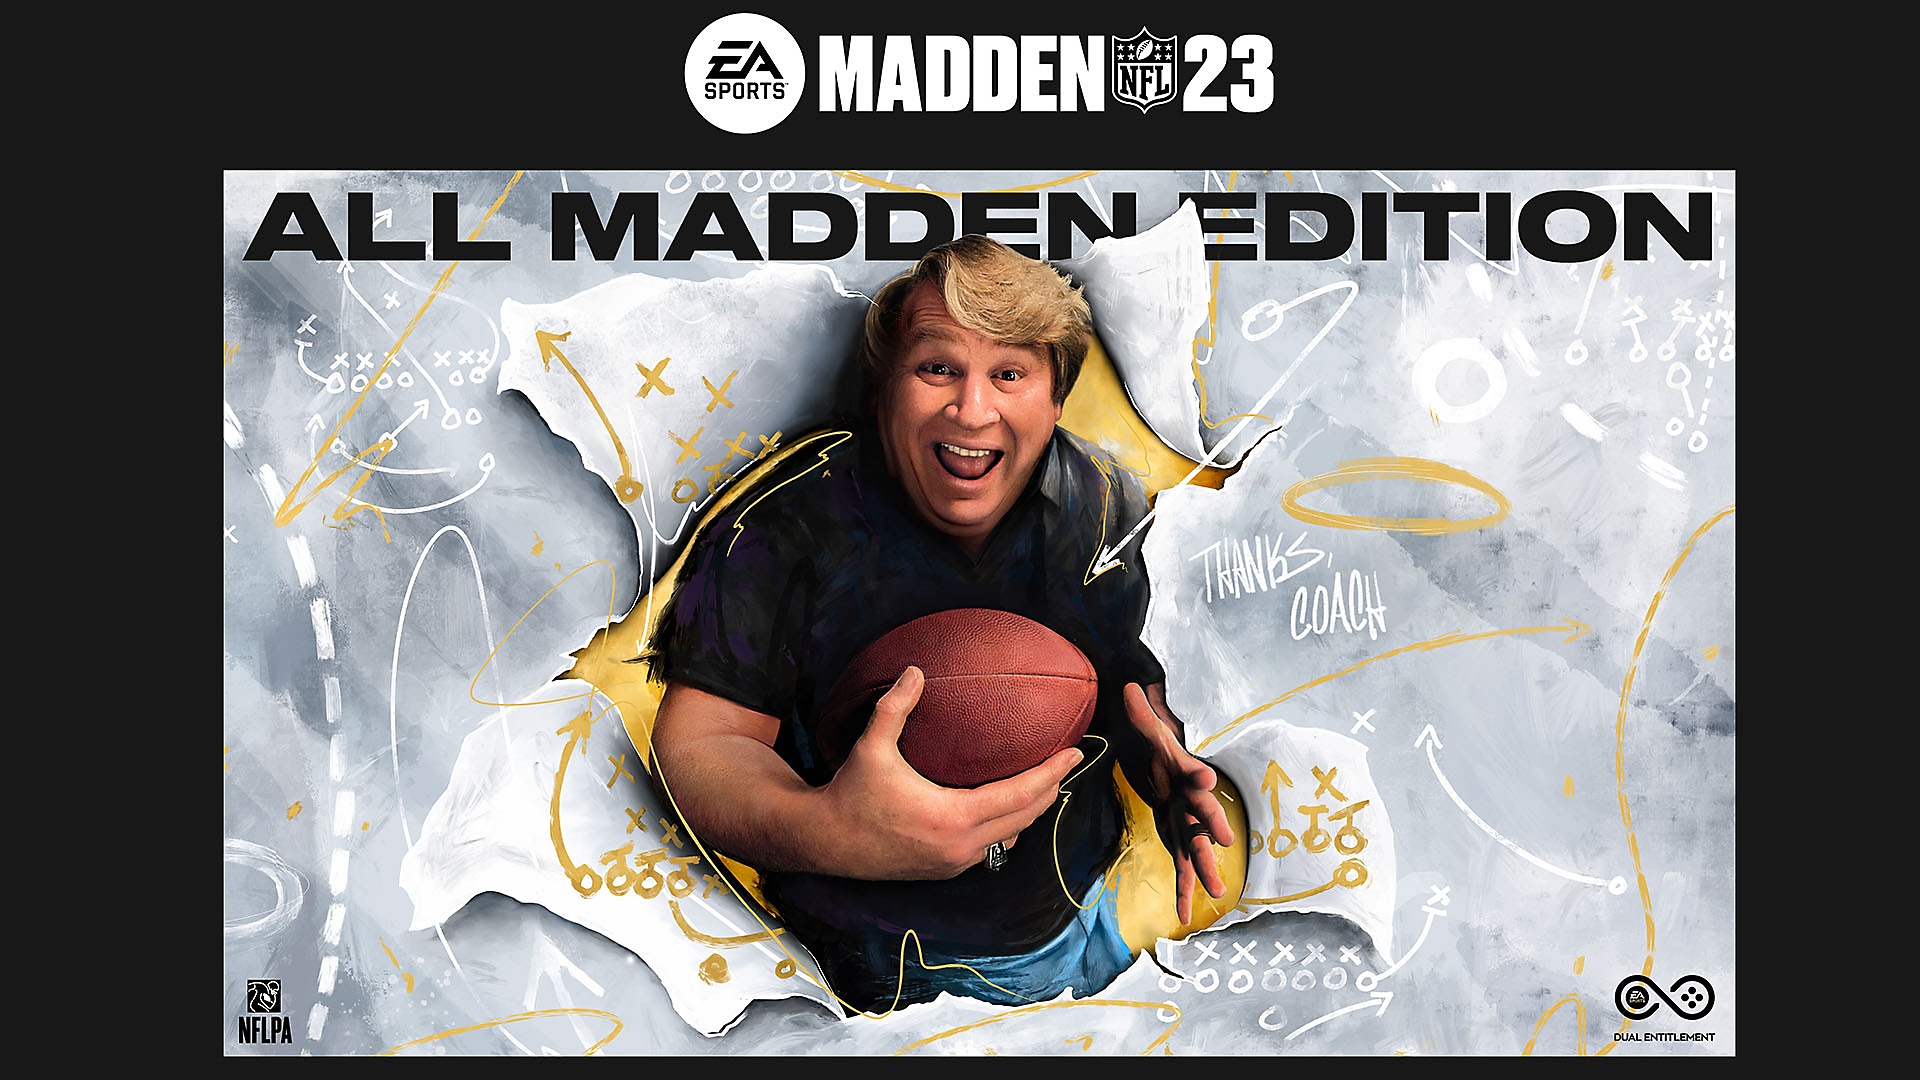 Madden NFL 23 all madden edition key art